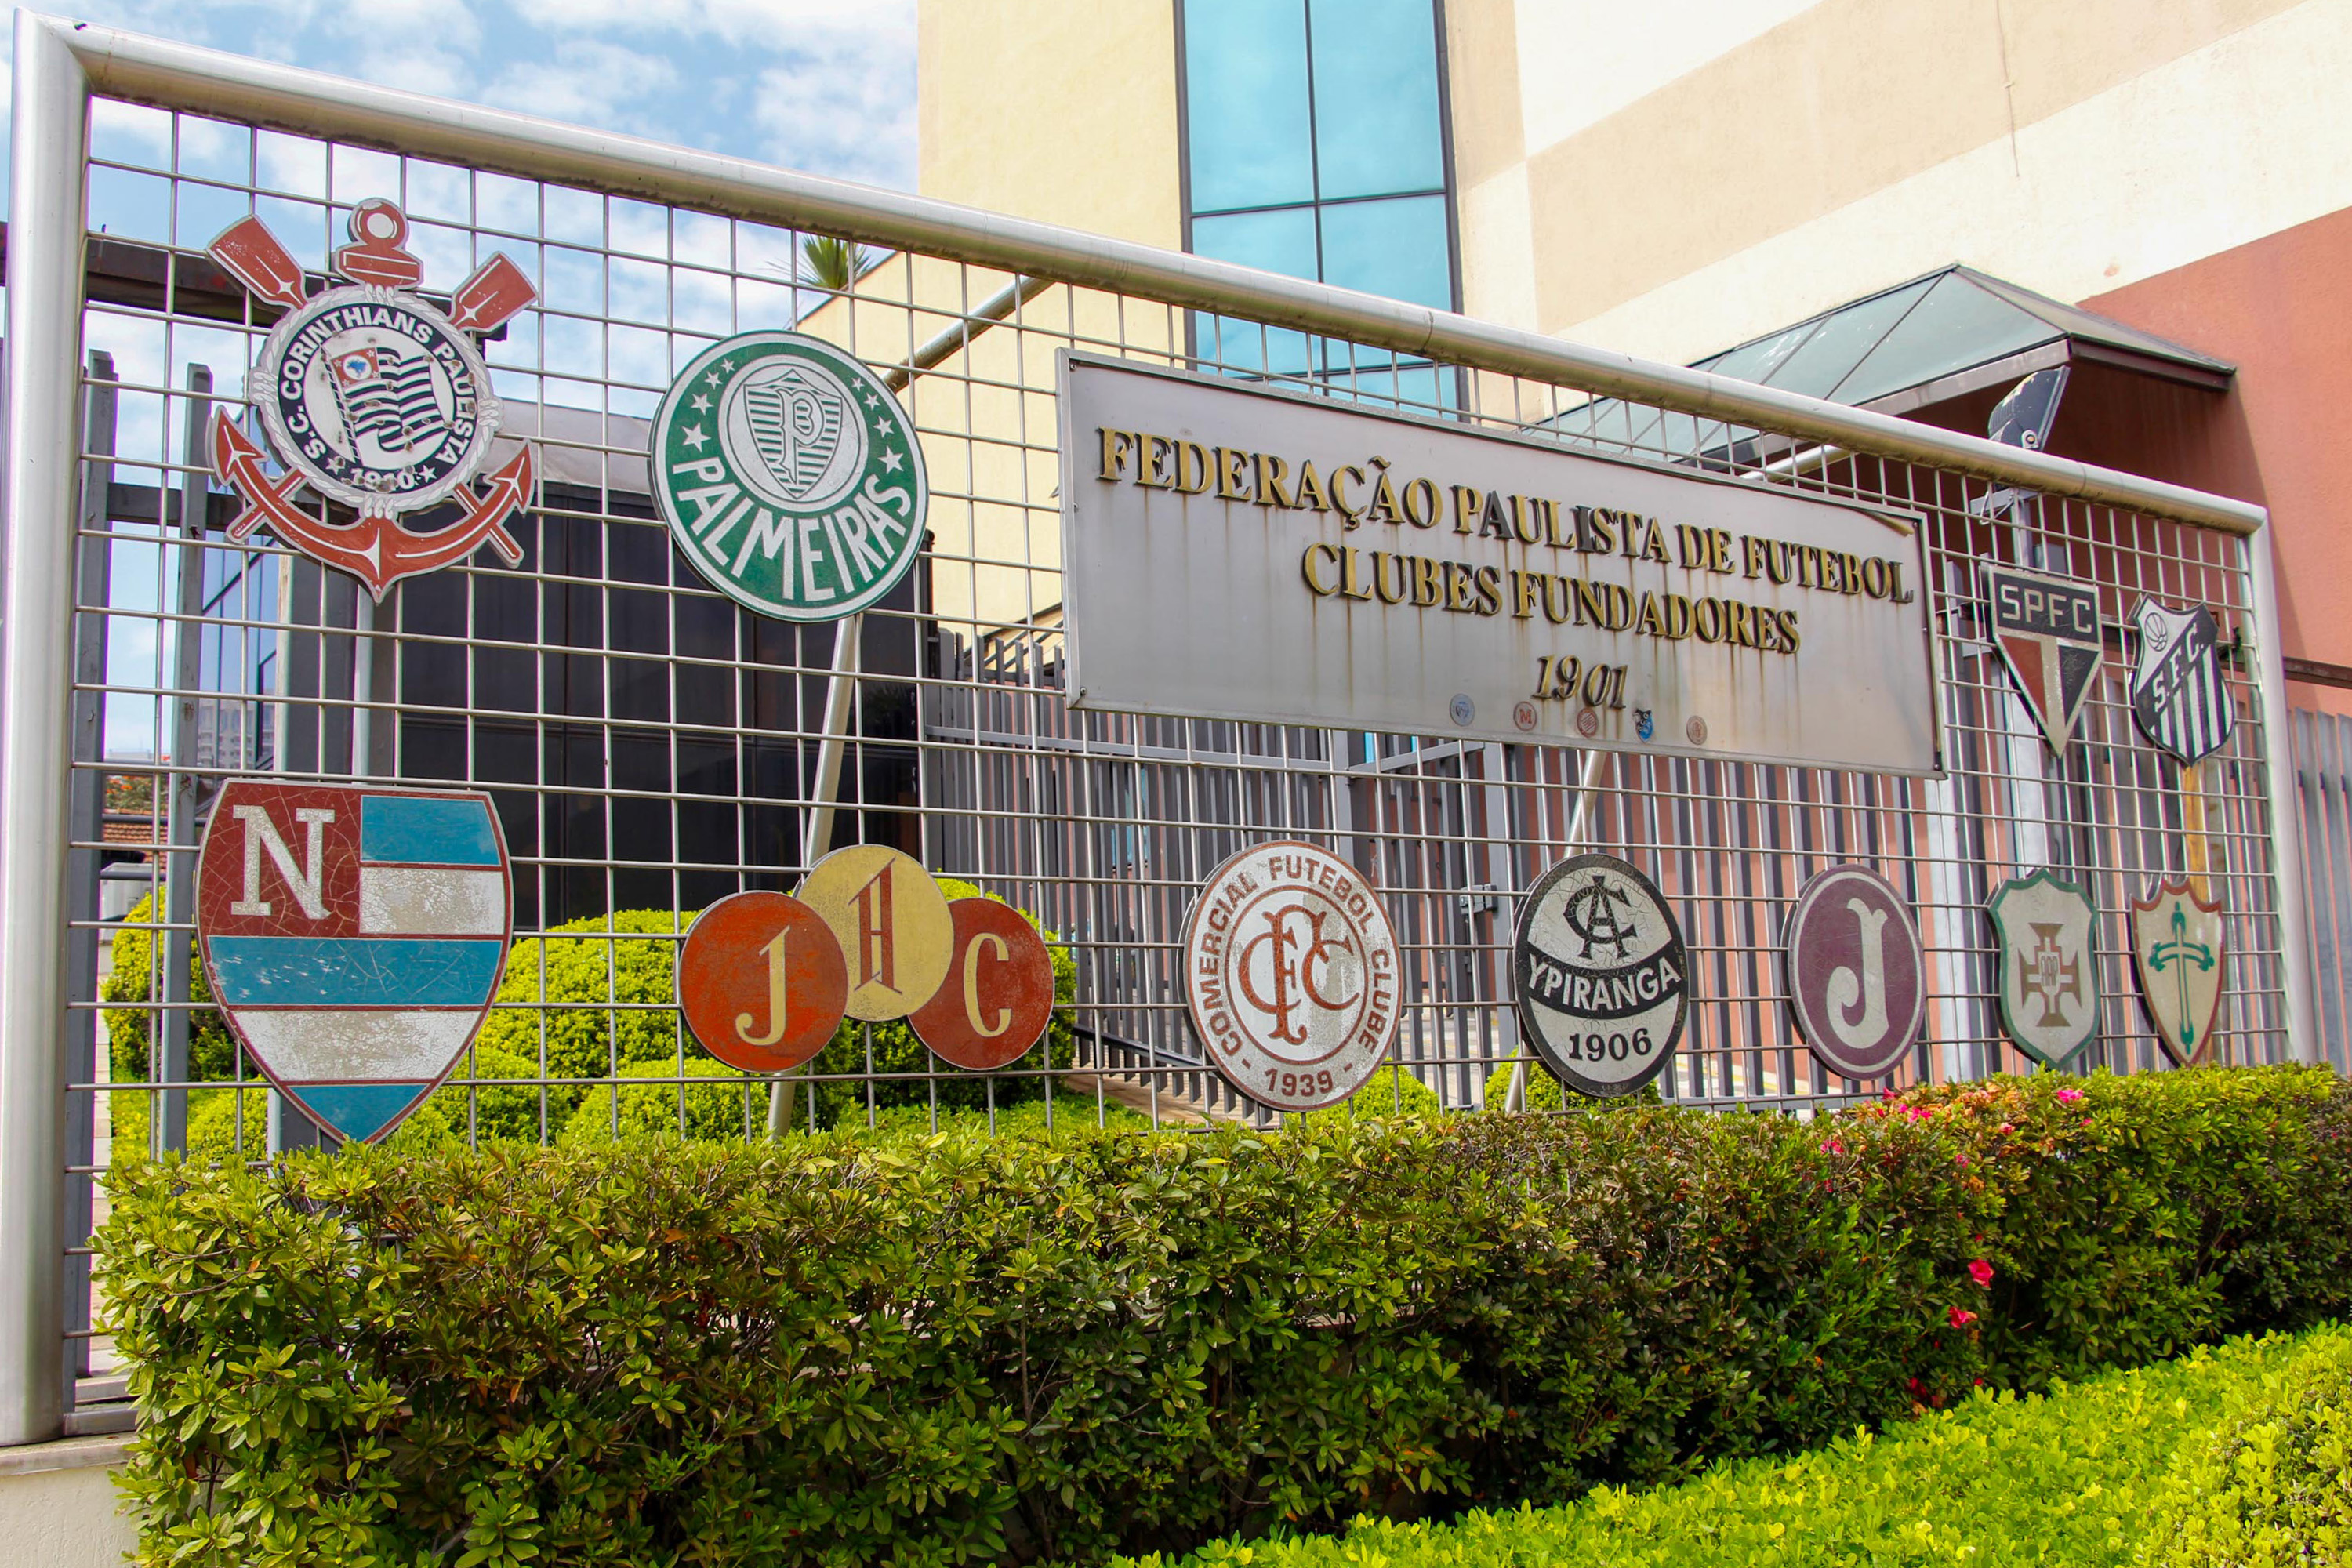 Fachada da Federação Paulista de Futebol, em São Paulo